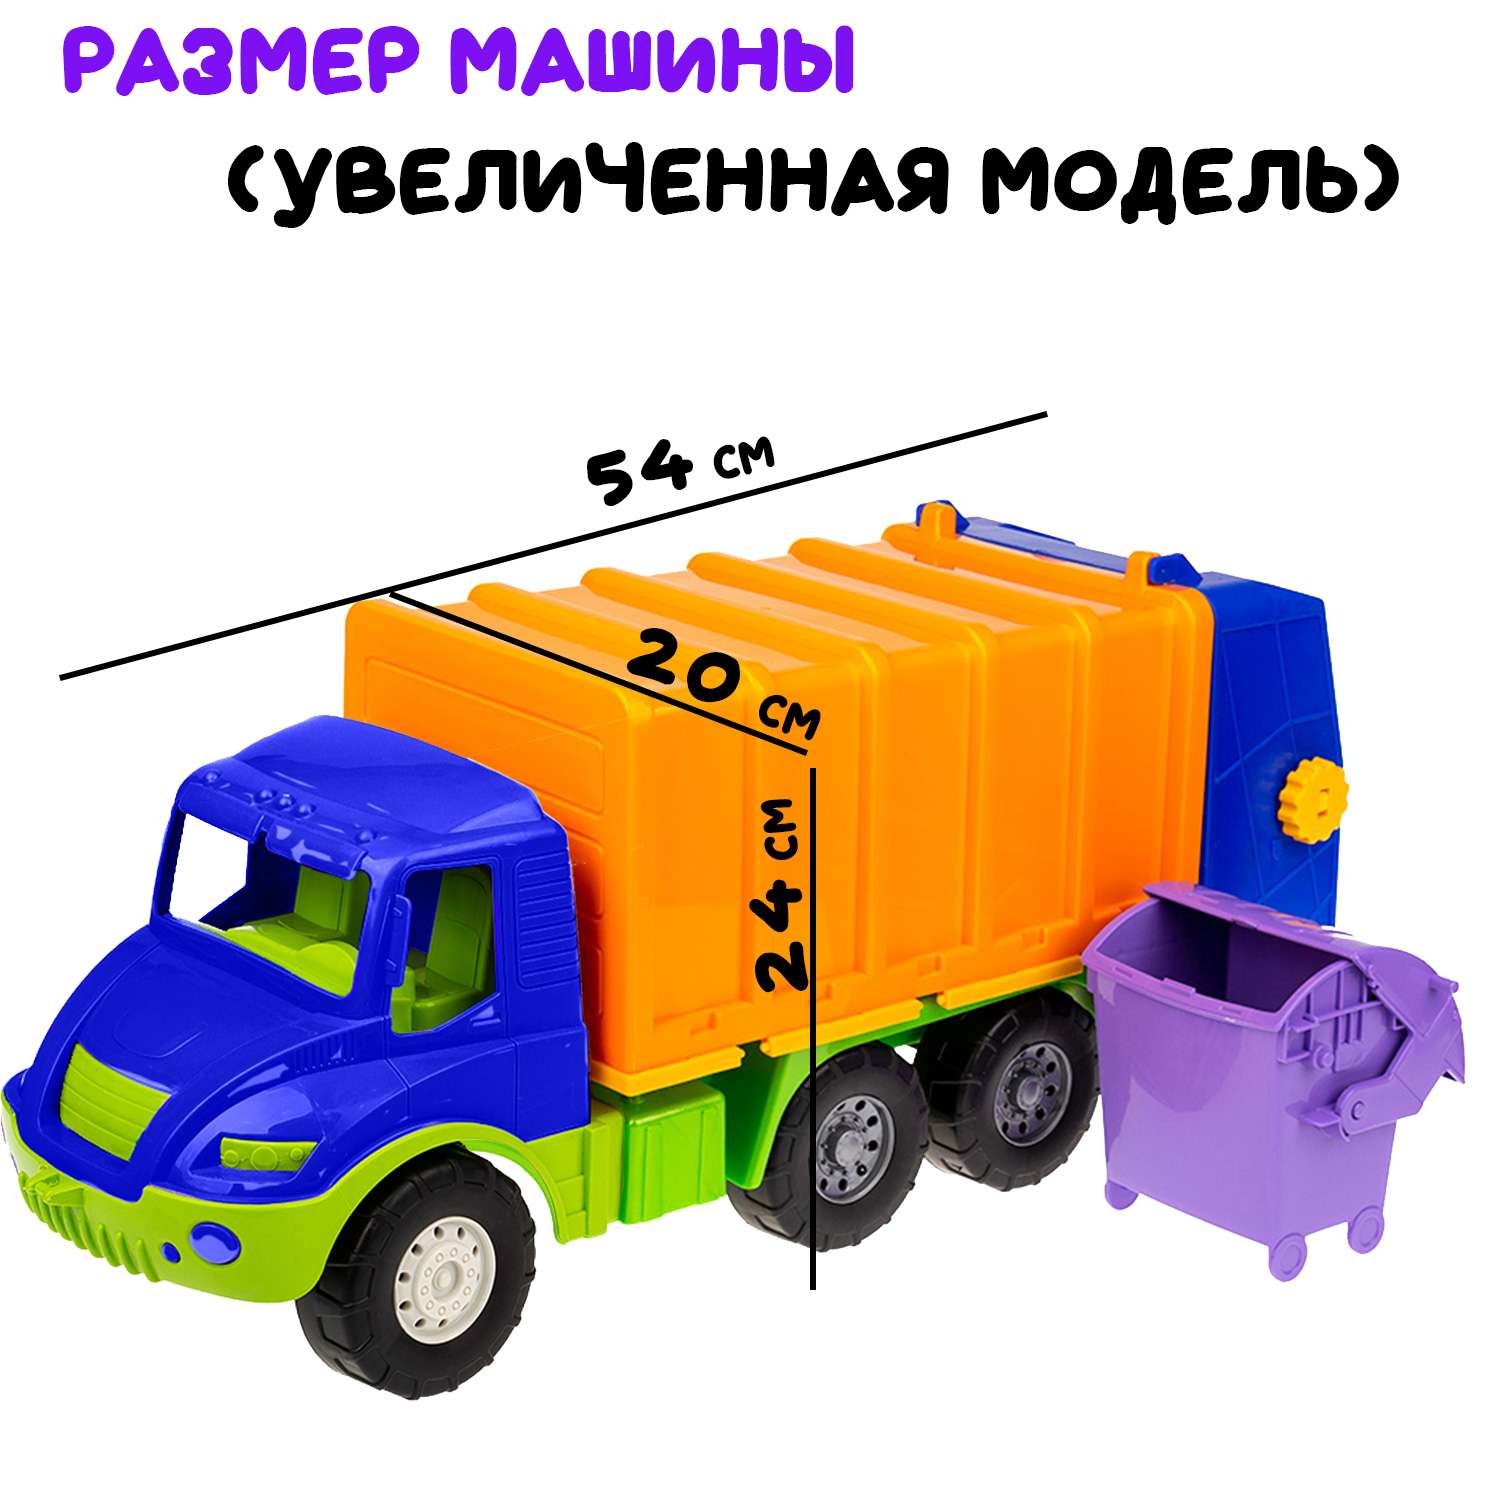 Большая машина Атлантис Colorplast мусоровоз длина 54 см 0633/03 - фото 4